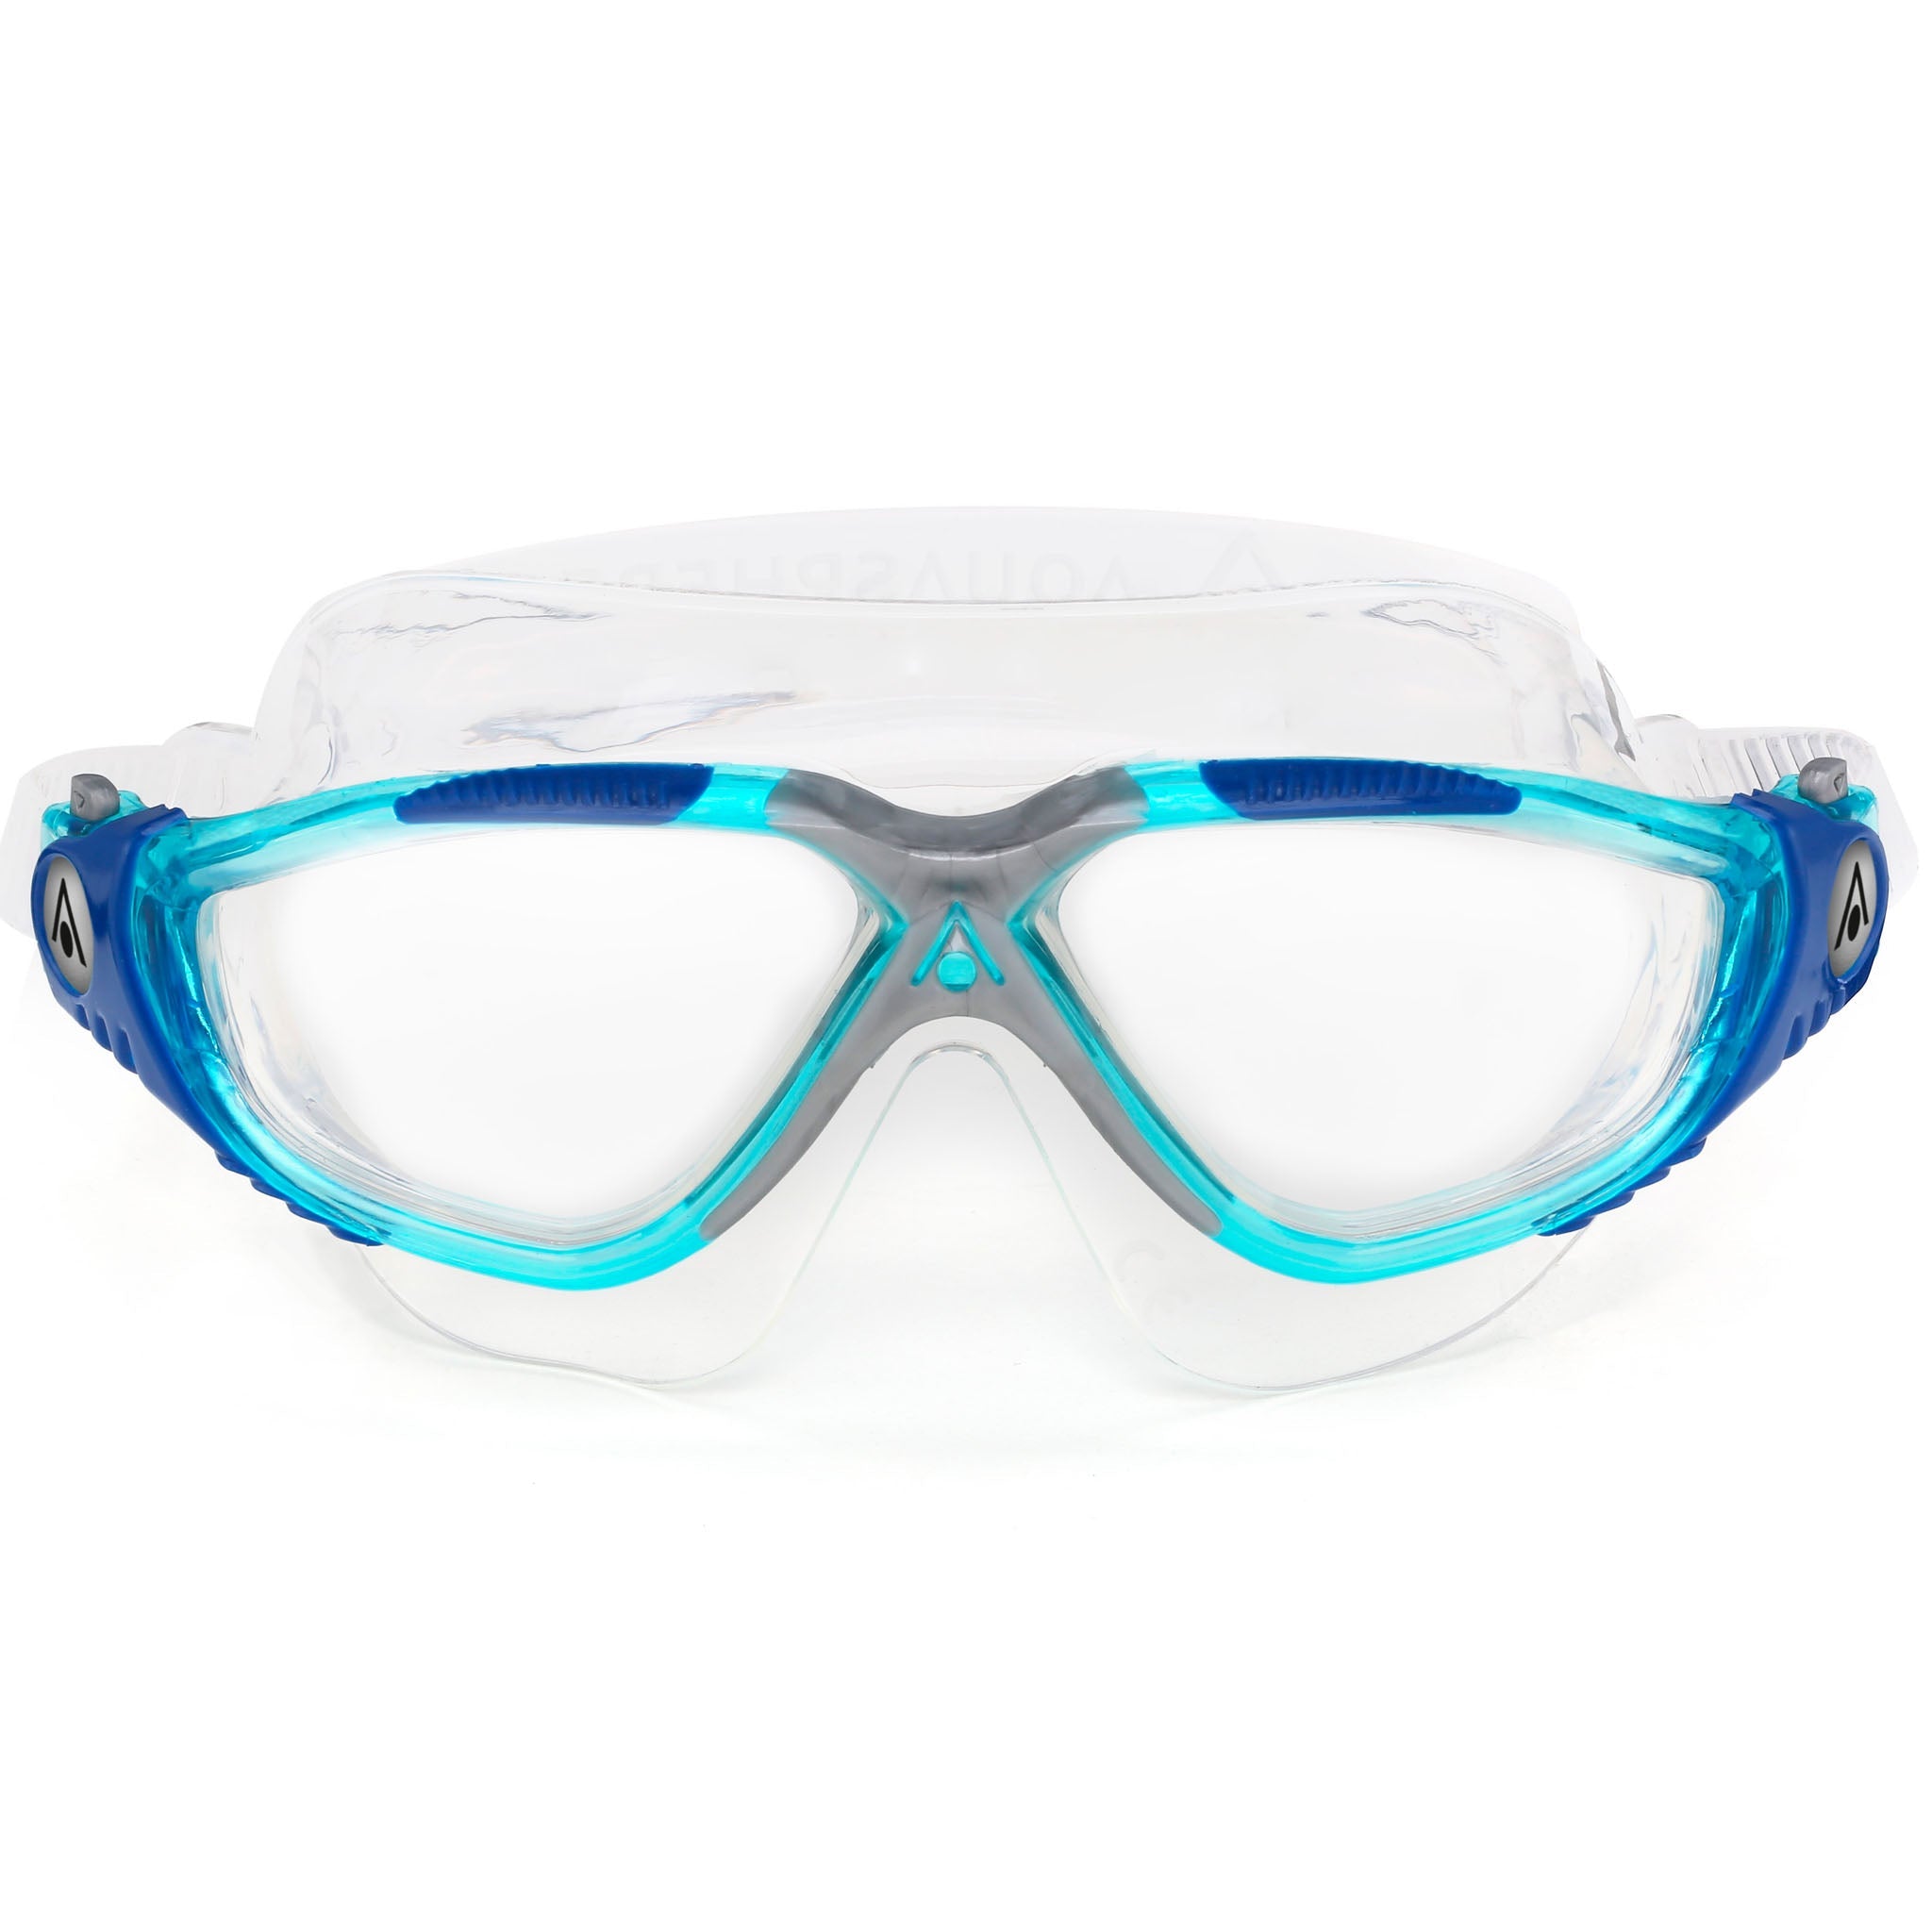 Aquasphere Vista Swim Goggles Mask - Aqua Blue - Front View